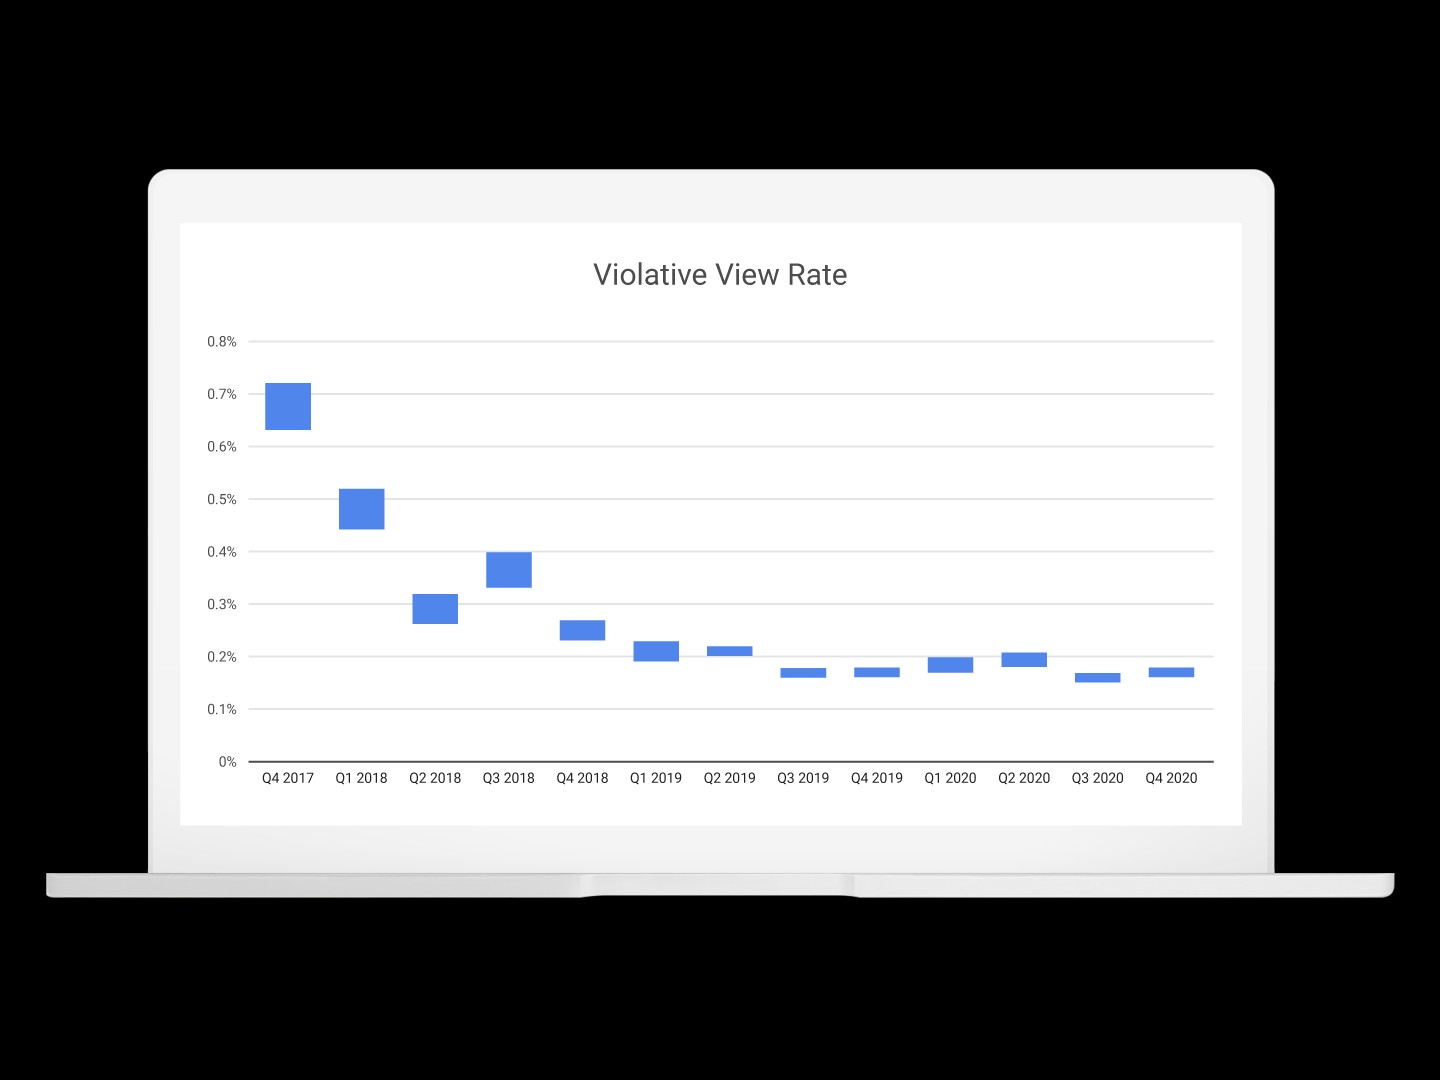 YouTube เริ่มเผยแพร่อัตราจำนวนวิวที่วิดีโอละเมิดกฎถูกรับชม แสดงพัฒนาการ AI ตรวจจับวิดีโอละเมิดกฎ 04